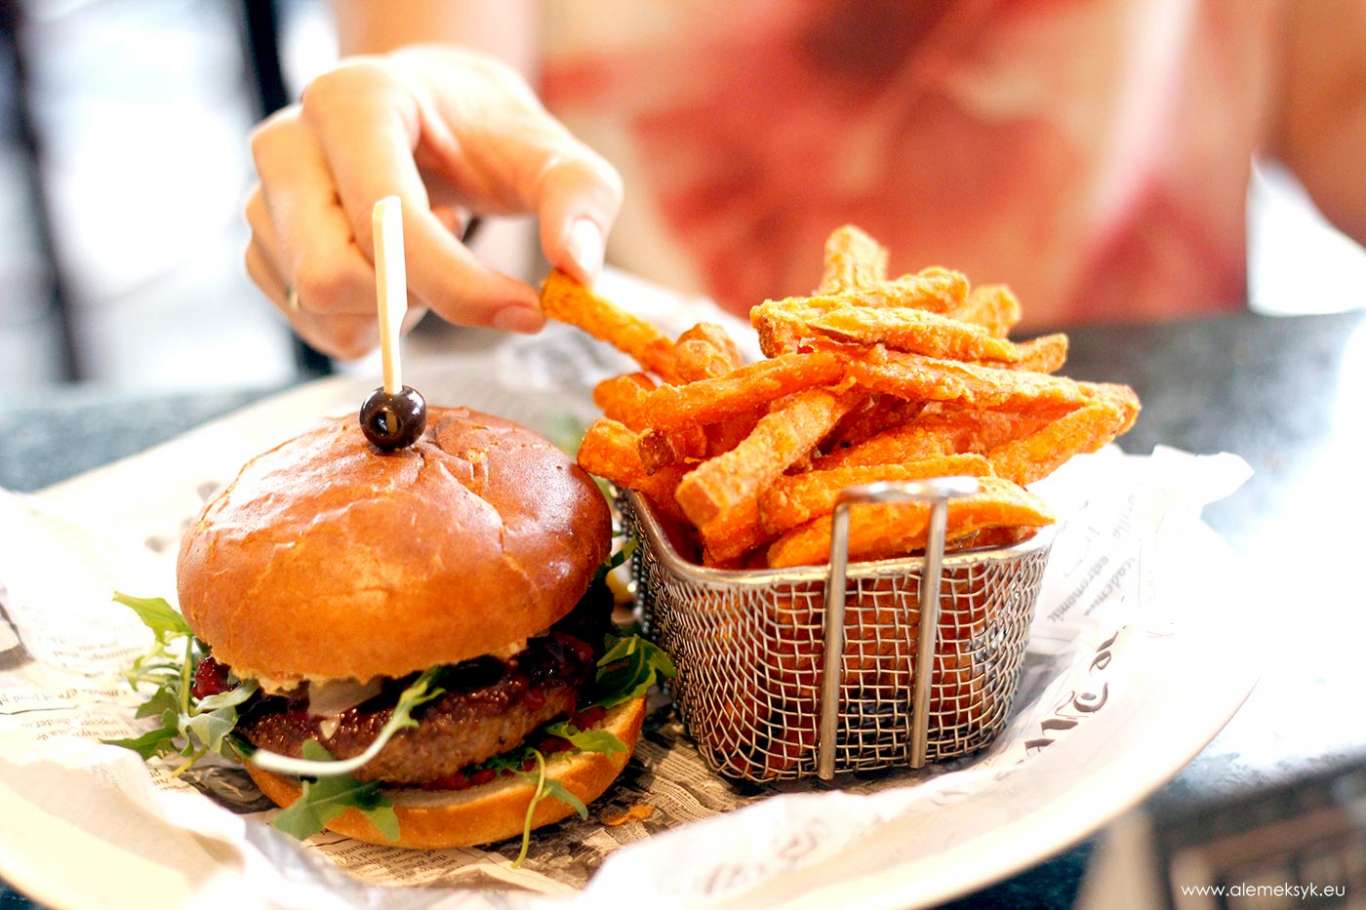 Jack &amp; Burger - gdzie zjeść wyśmienite burgery sparowane z amerykańską whiskey?